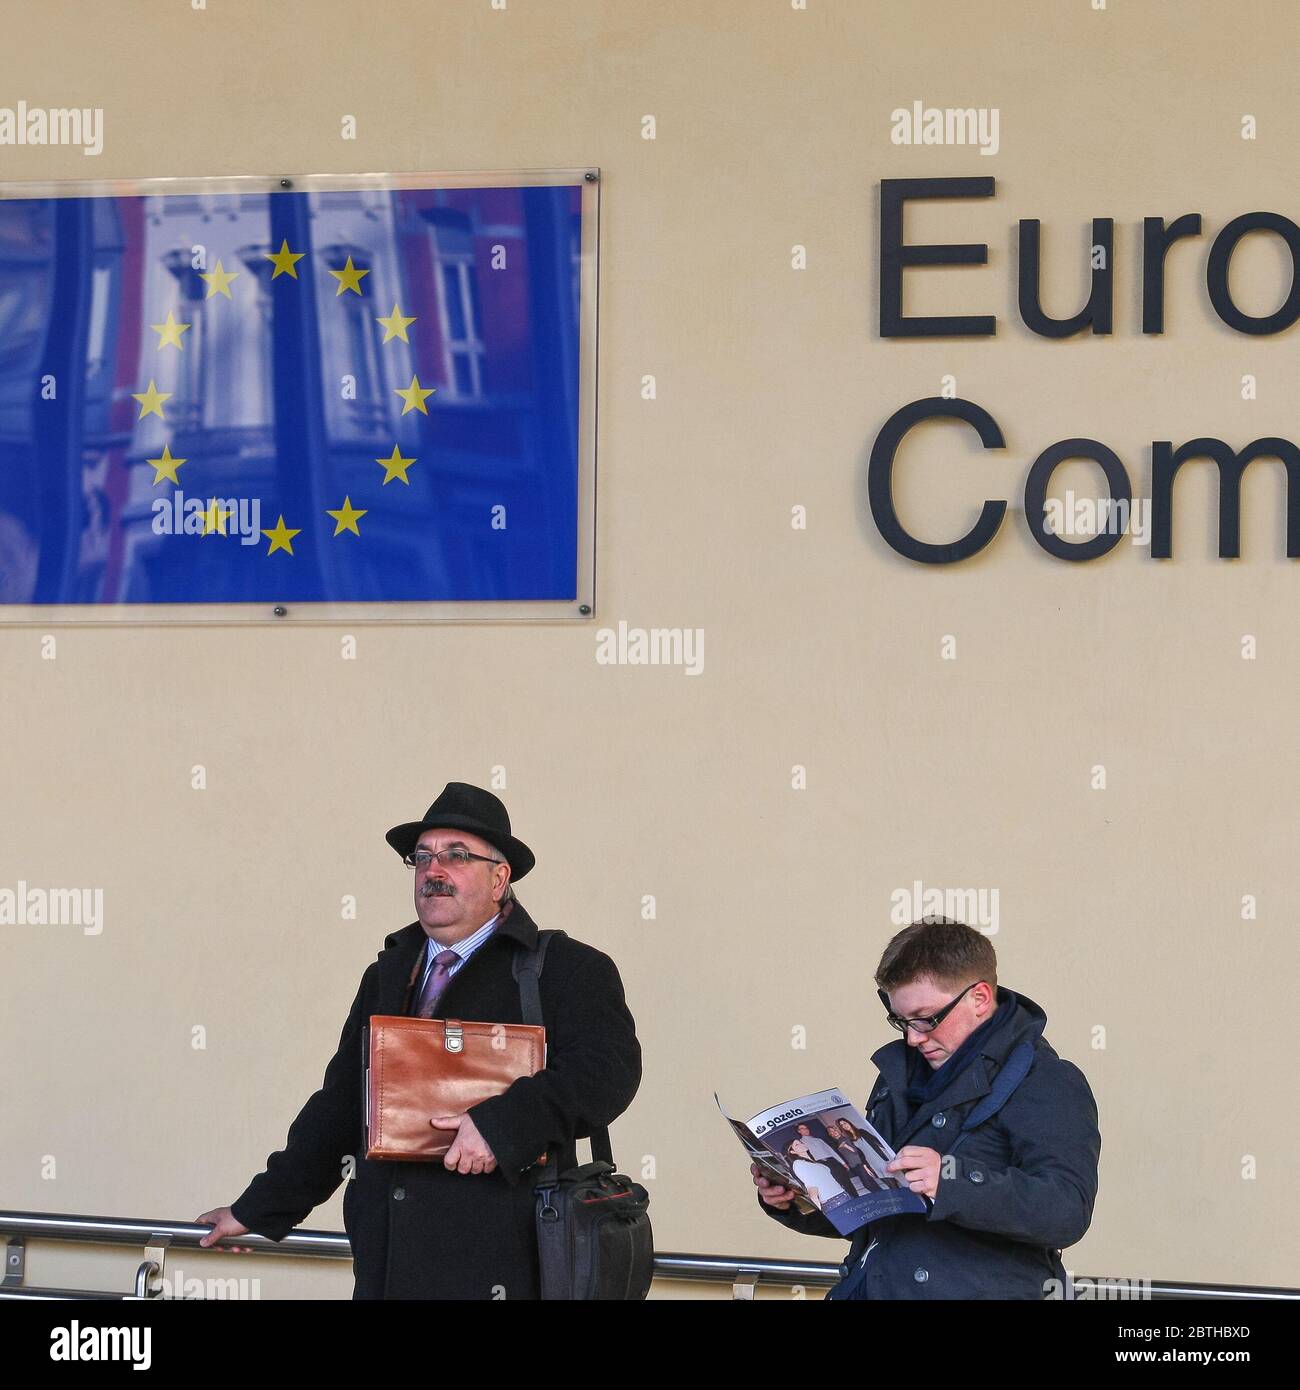 Le persone comunicano vicino all'edificio della Commissione europea. Bruxelles, Belgio - 02 Mar 2011 Foto Stock